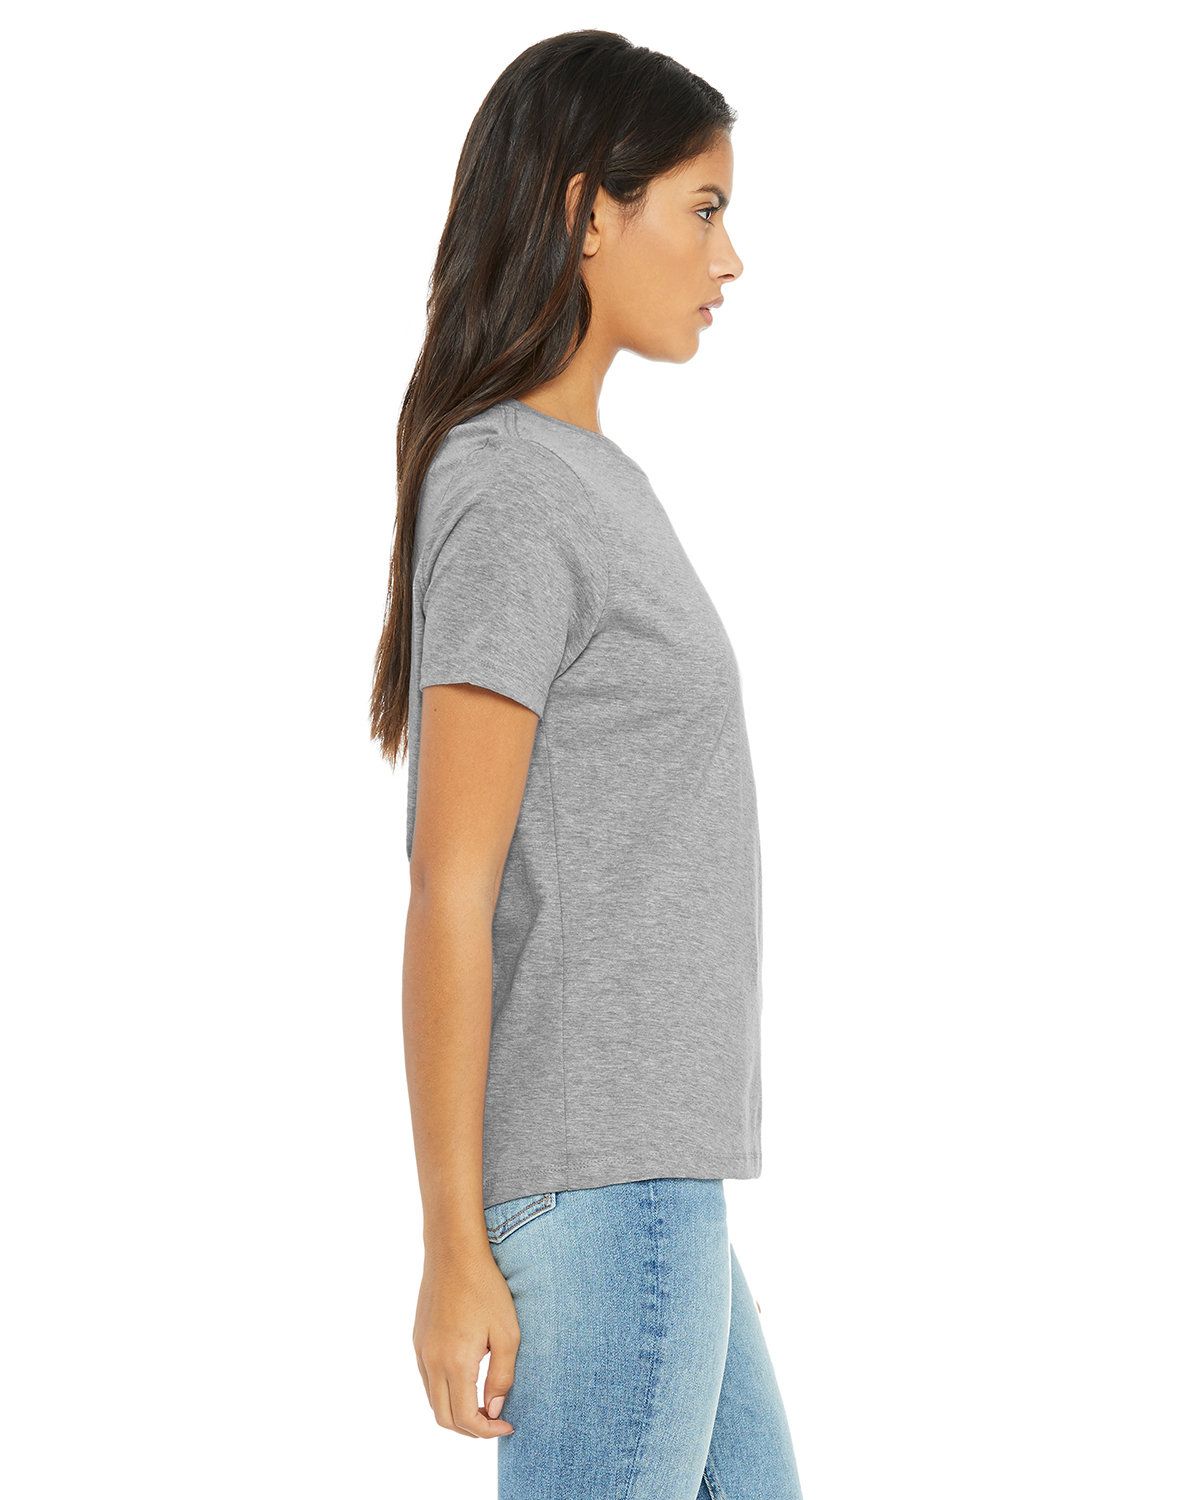 'Bella Canvas 6400CVC Ladies Relaxed Heather CVC Short Sleeve T Shirt'